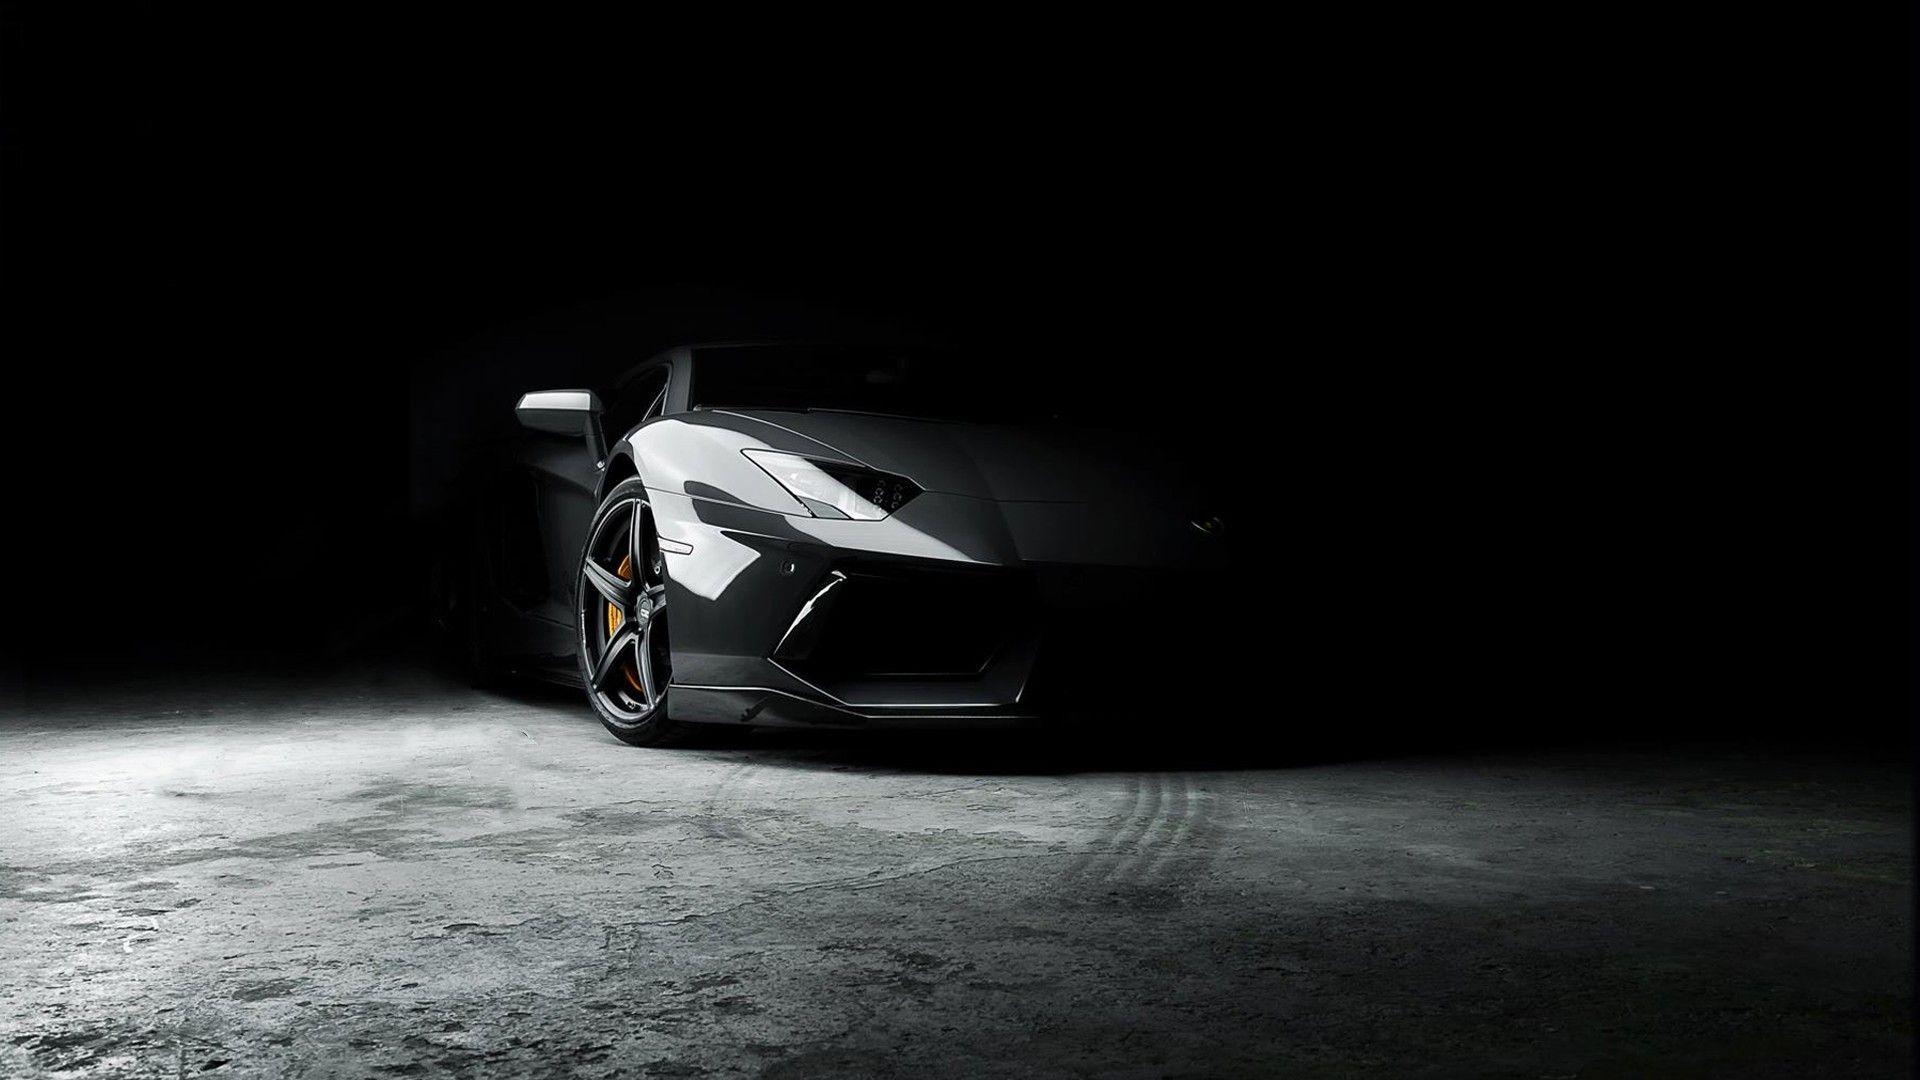 Lamborghini Dark Wallpapers - Top Free Lamborghini Dark Backgrounds